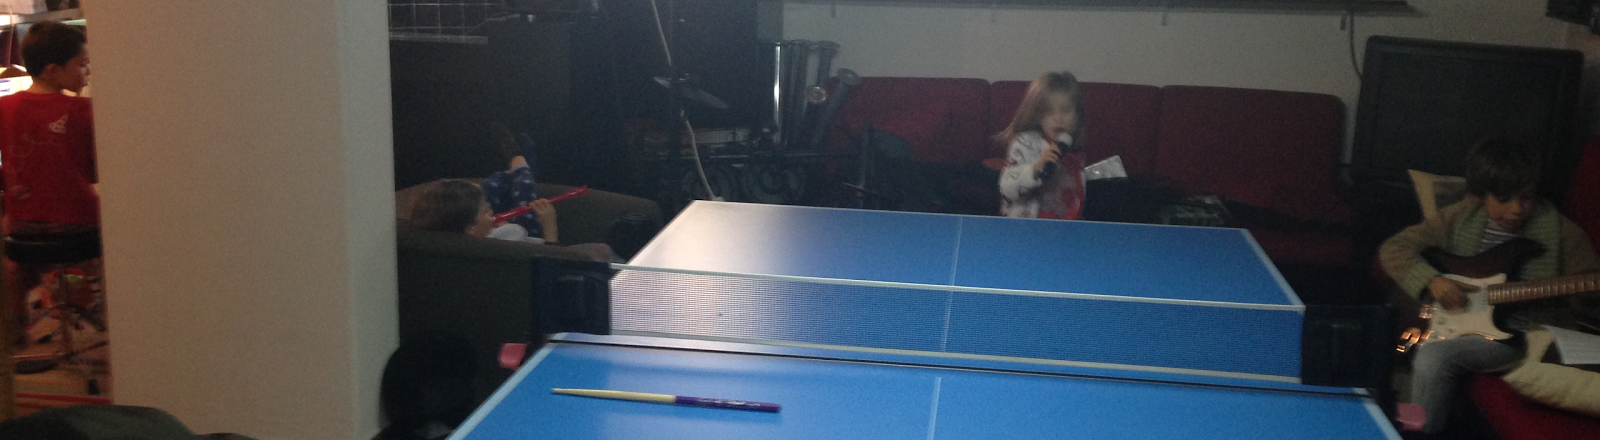 Ping-pong invisível que você joga sozinho é perfeito para anti-sociais